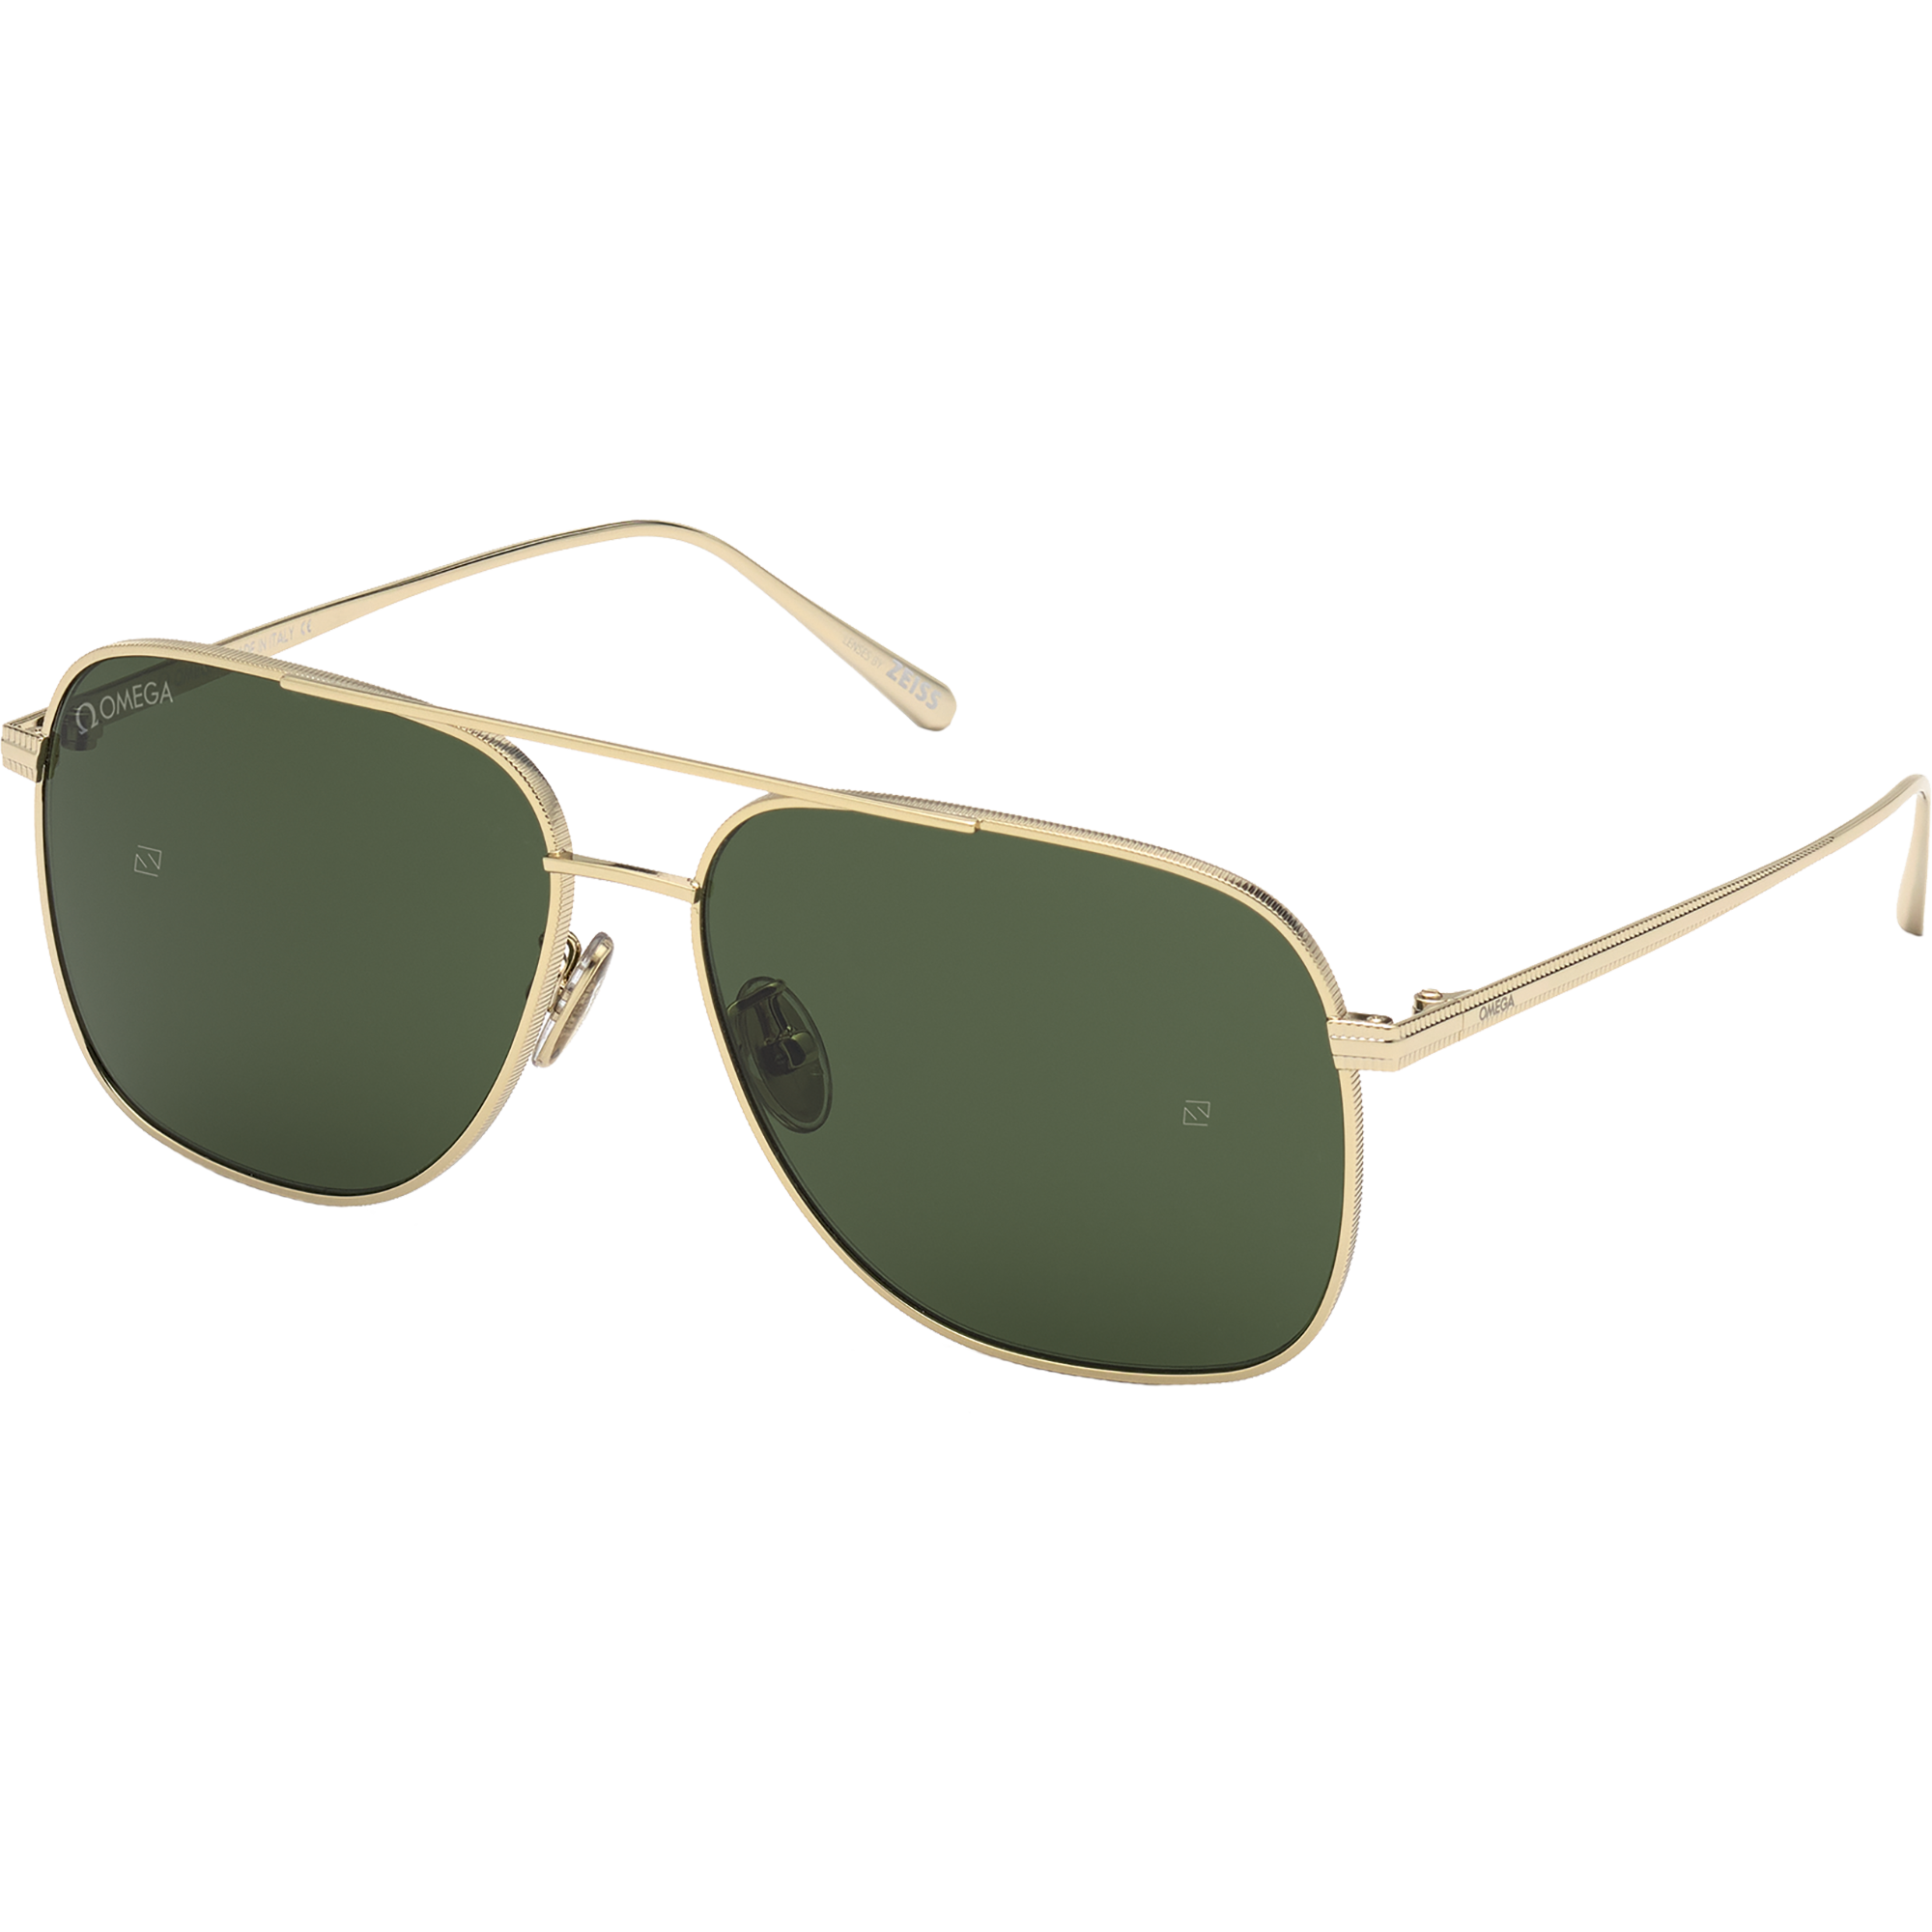 Солнцезащитные очки - Форма "авиатор", МУЖСКИЕ ОЧКИ - OM0026-H6032N